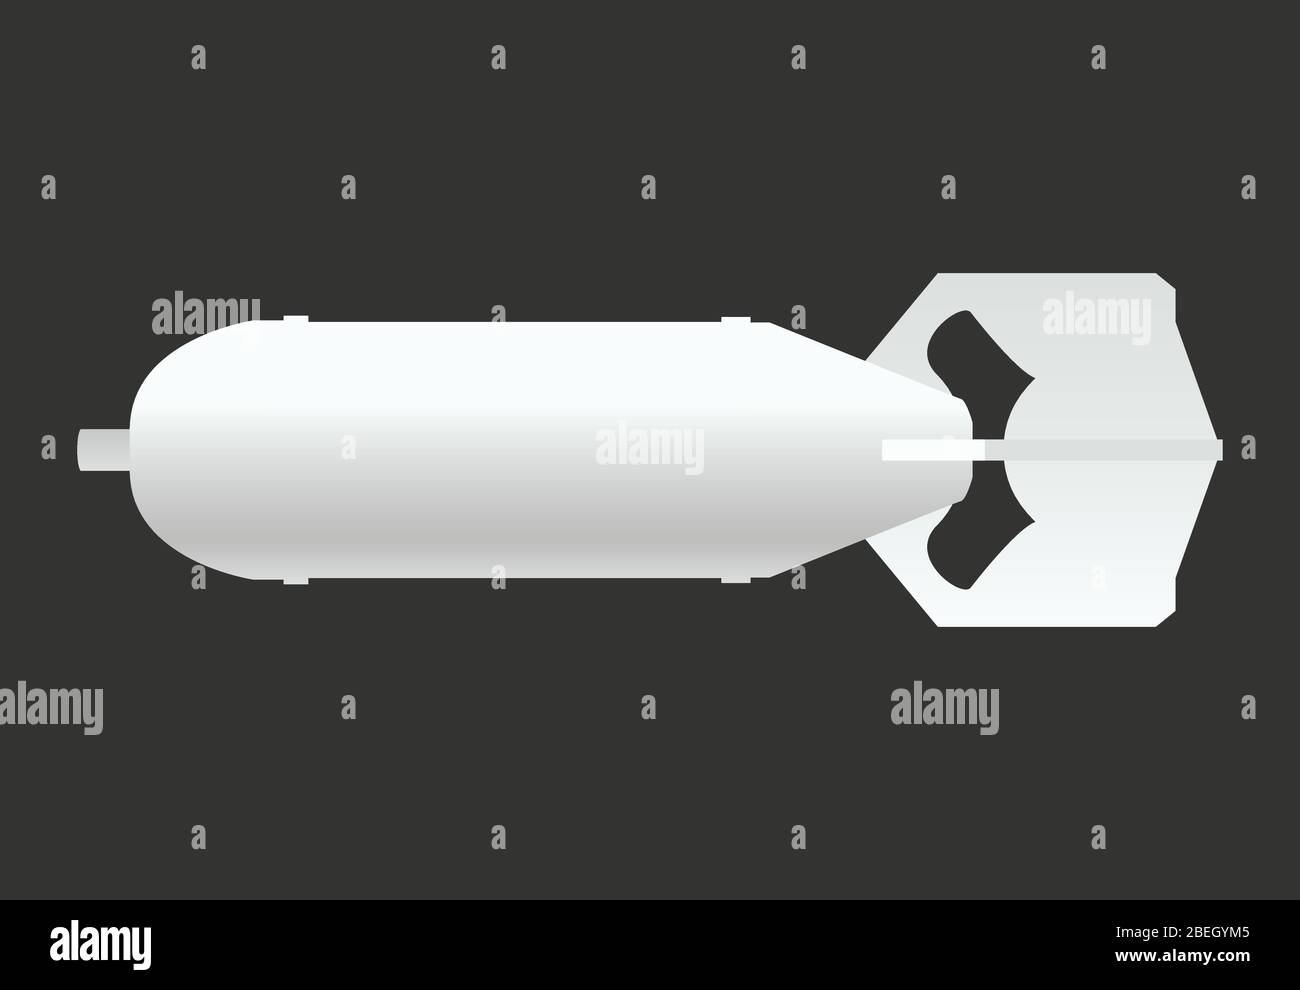 Weiße Retro-Luftbombe-Symbol, Waffe, Militär und Raketen-Zeichen, Vektor-Illustration Stock Vektor